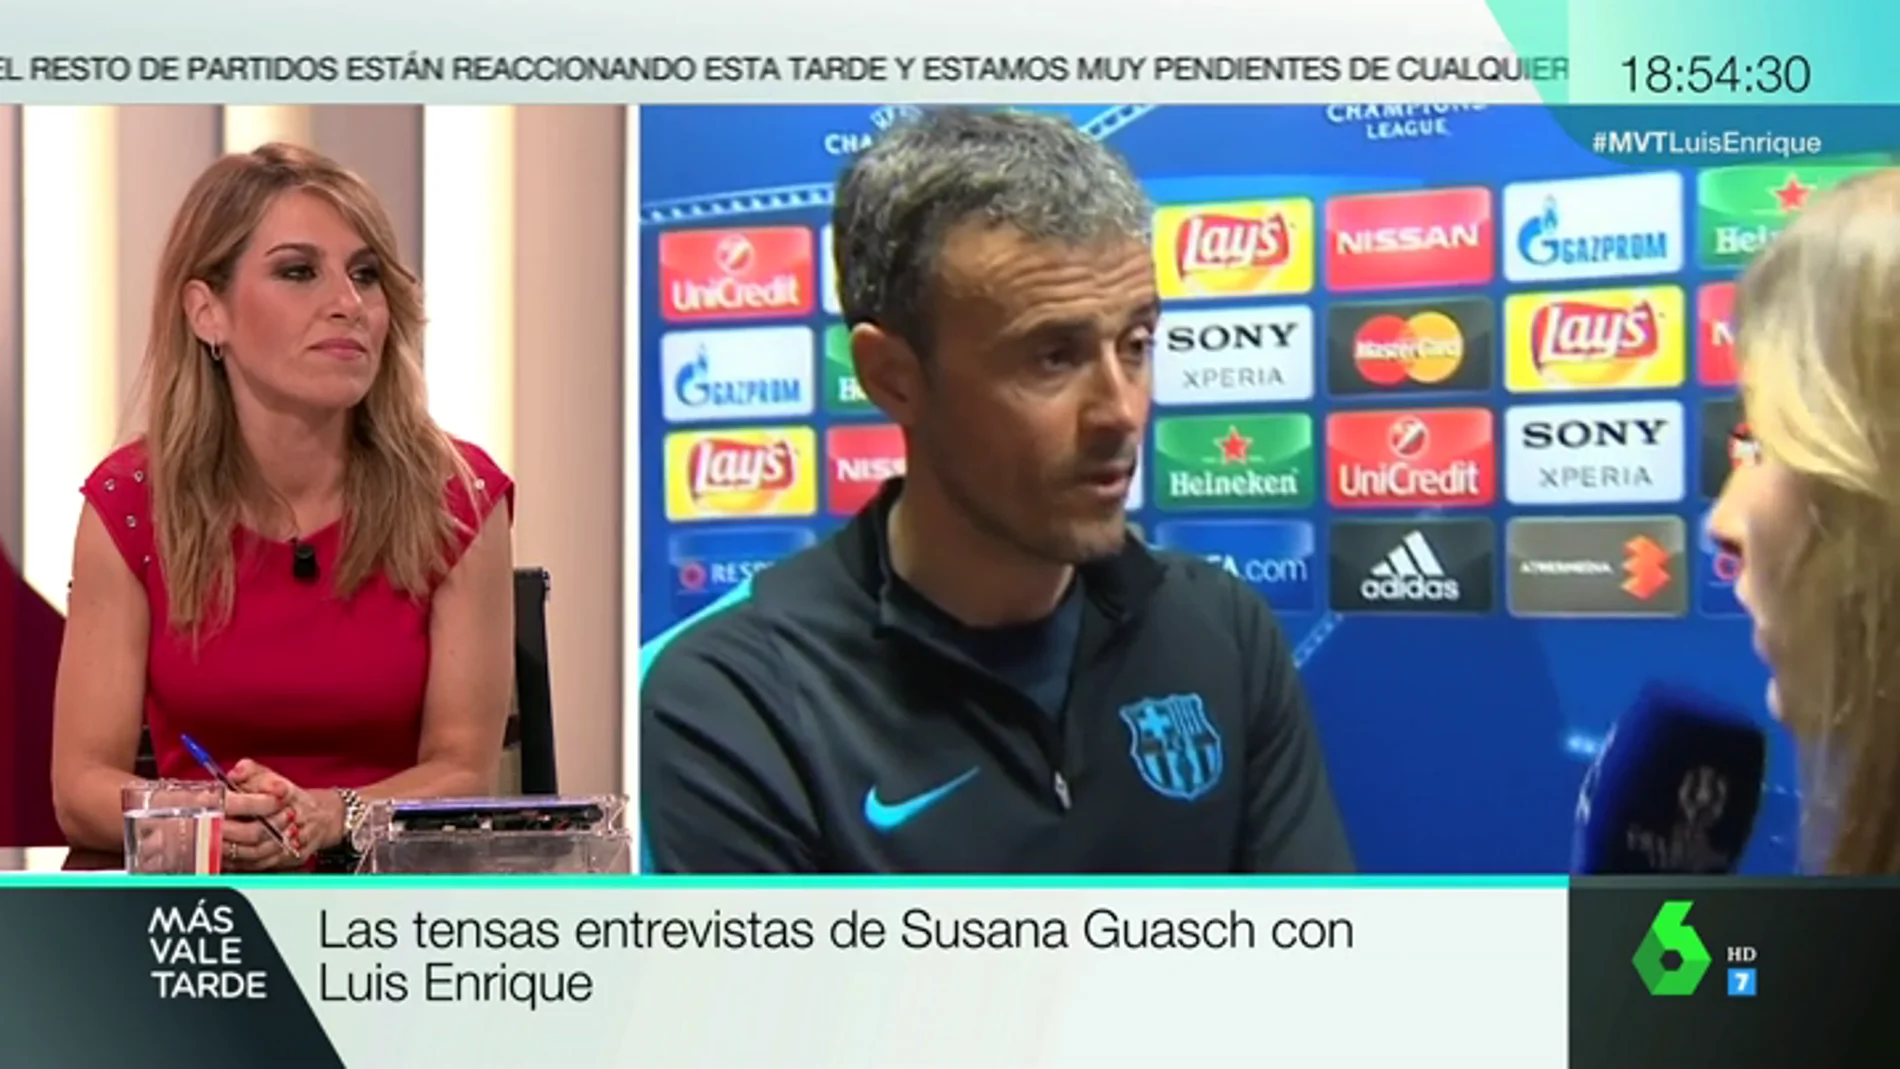 Recopilamos las tensas entrevistas de Susana Guasch con Luis Enrique: "Habla de lo que quieras, yo te contesto lo que me apetezca"